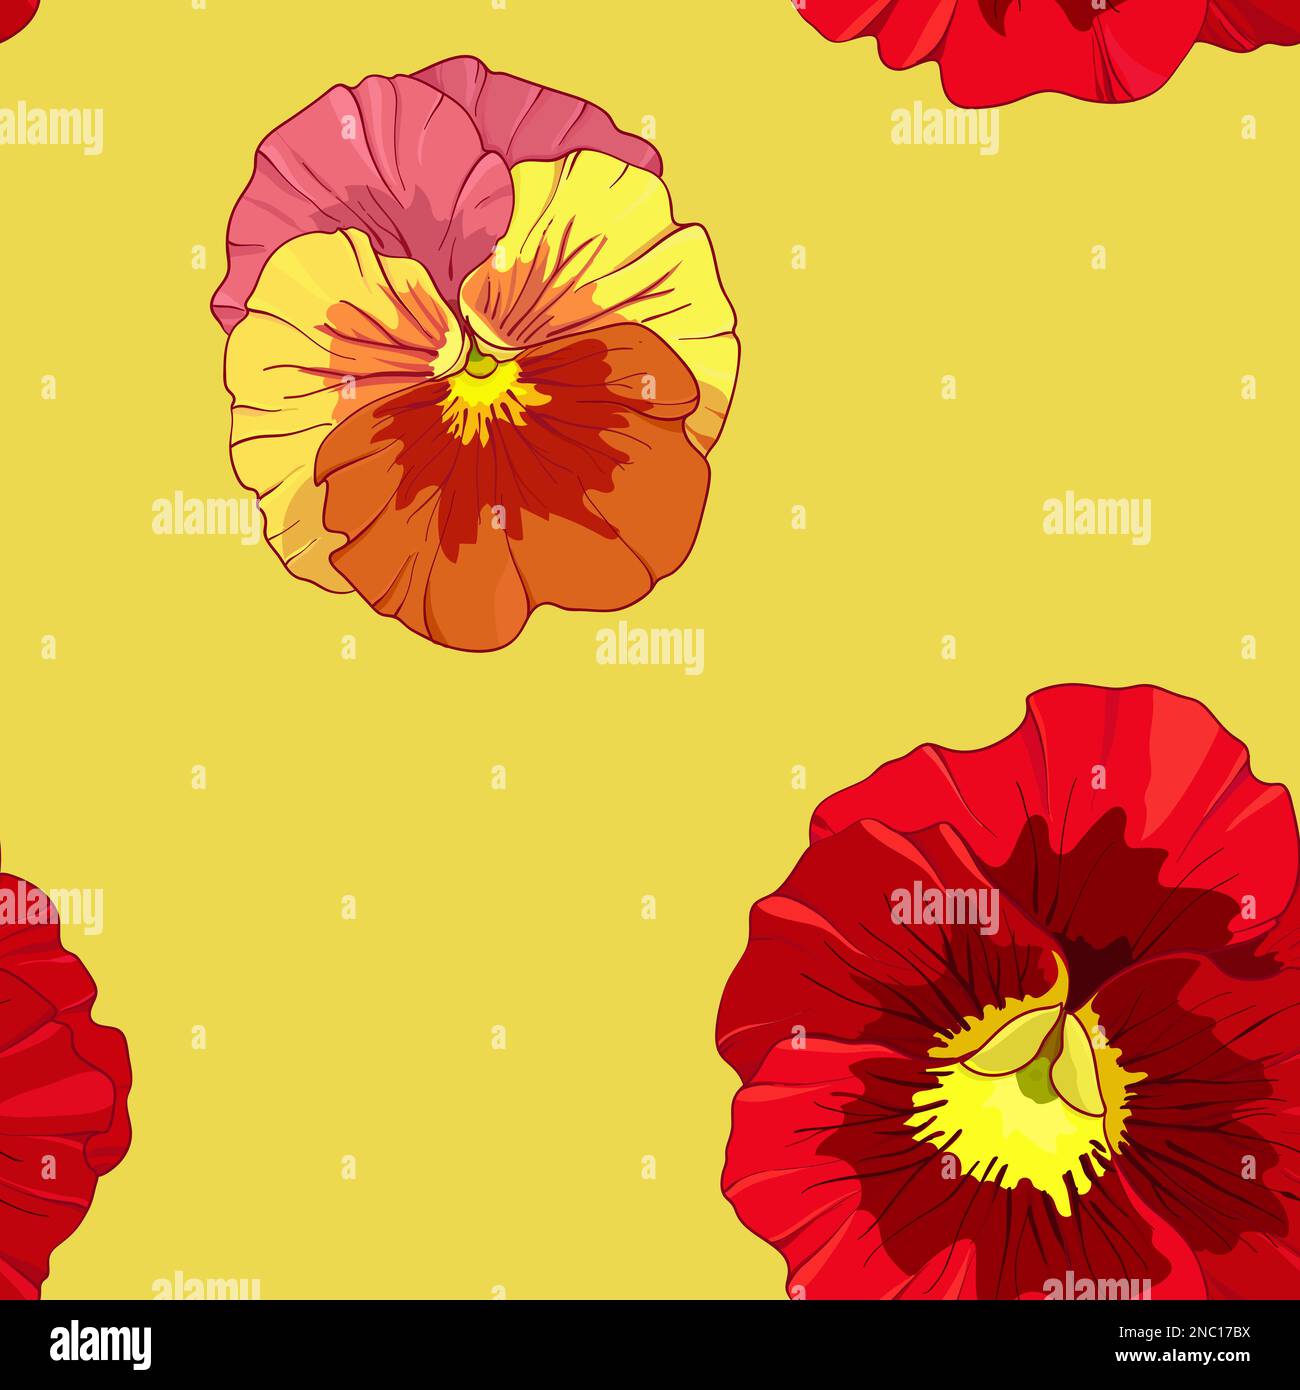 Leuchtend rote und orangefarbene Blüten von Weichtieren auf gelbem Hintergrund. Nahtloses Vektormuster. Darstellung des manuellen Zeichnungsvektors. Stock Vektor